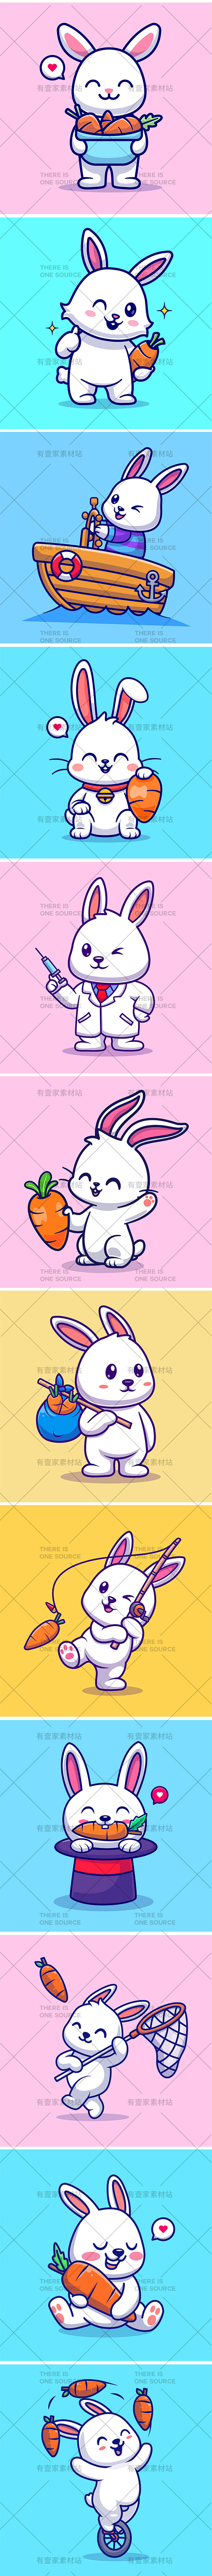 卡通可爱动物宠物吉祥物兔子小白兔ip形象...